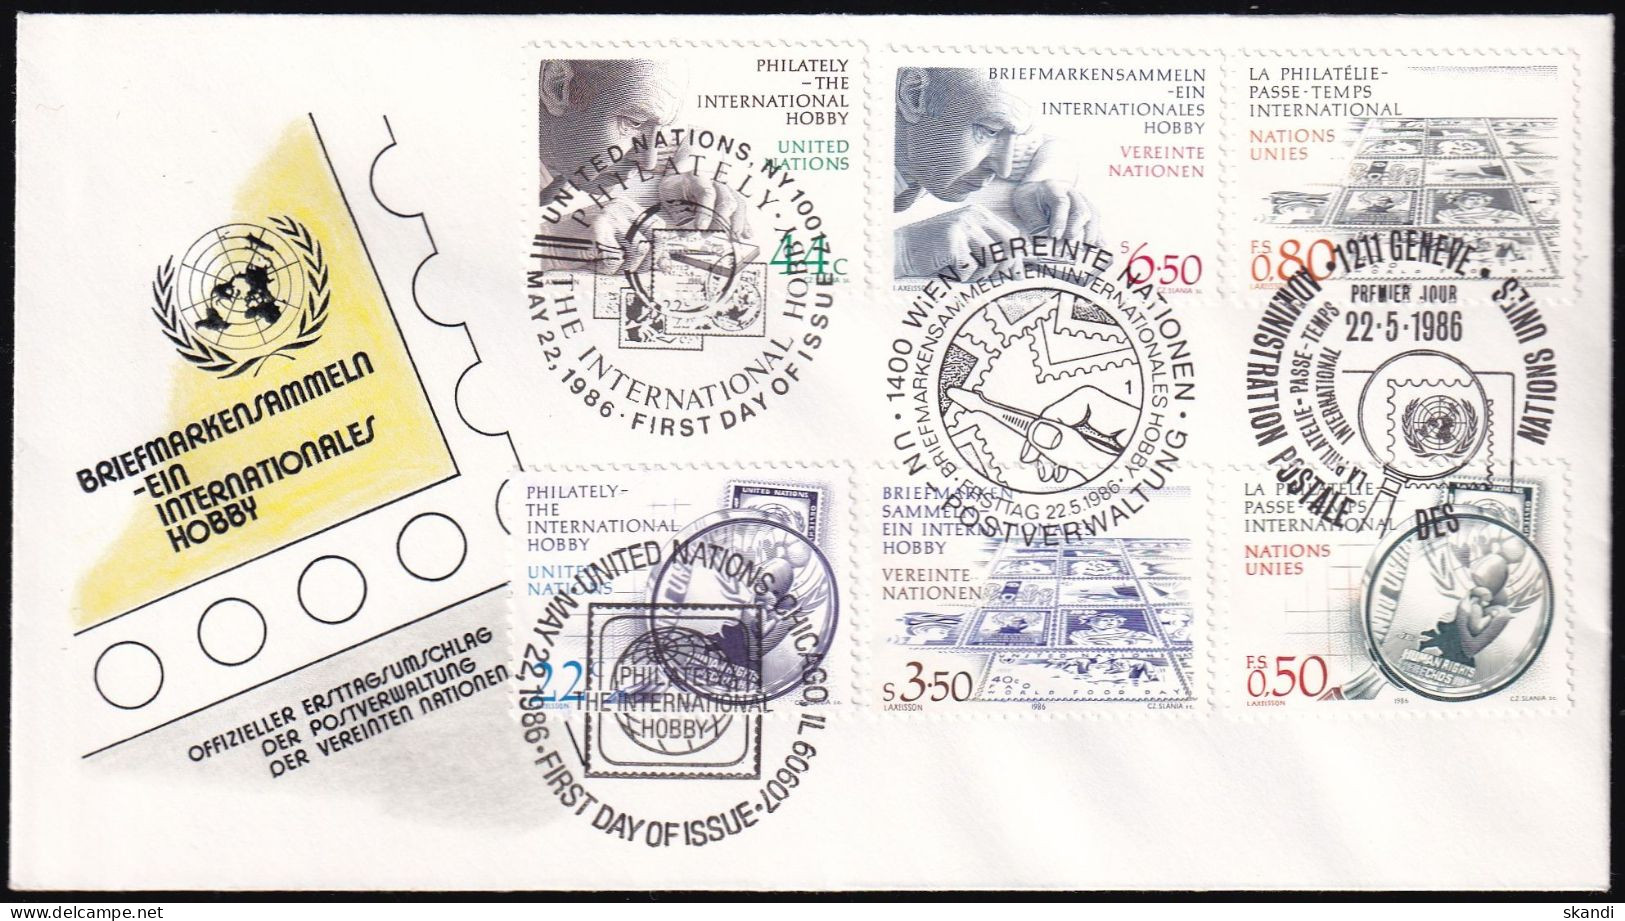 UNO NEW YORK - WIEN - GENF 1986 TRIO-FDC Briefmarkensammeln - New York/Geneva/Vienna Joint Issues